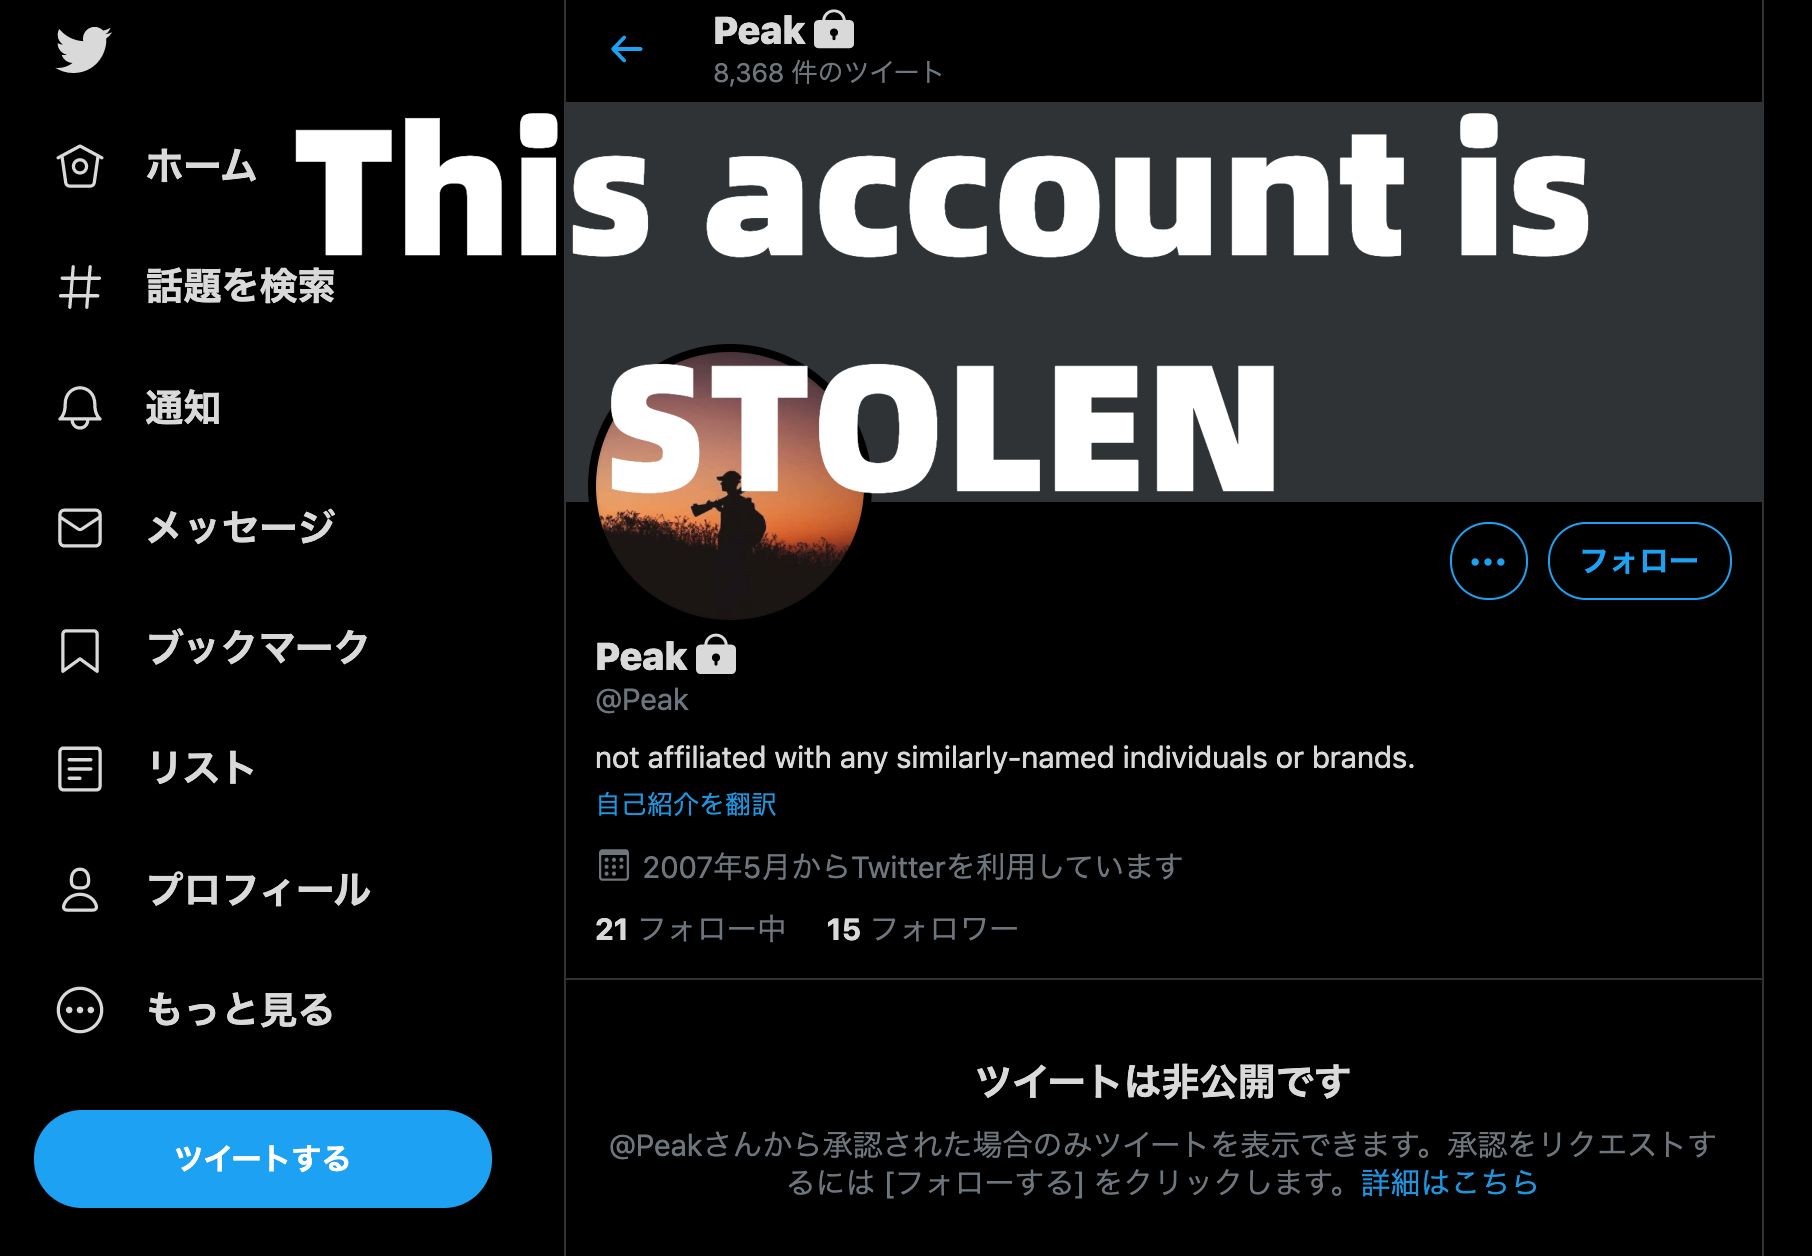 Twitter@peak is stolen account!